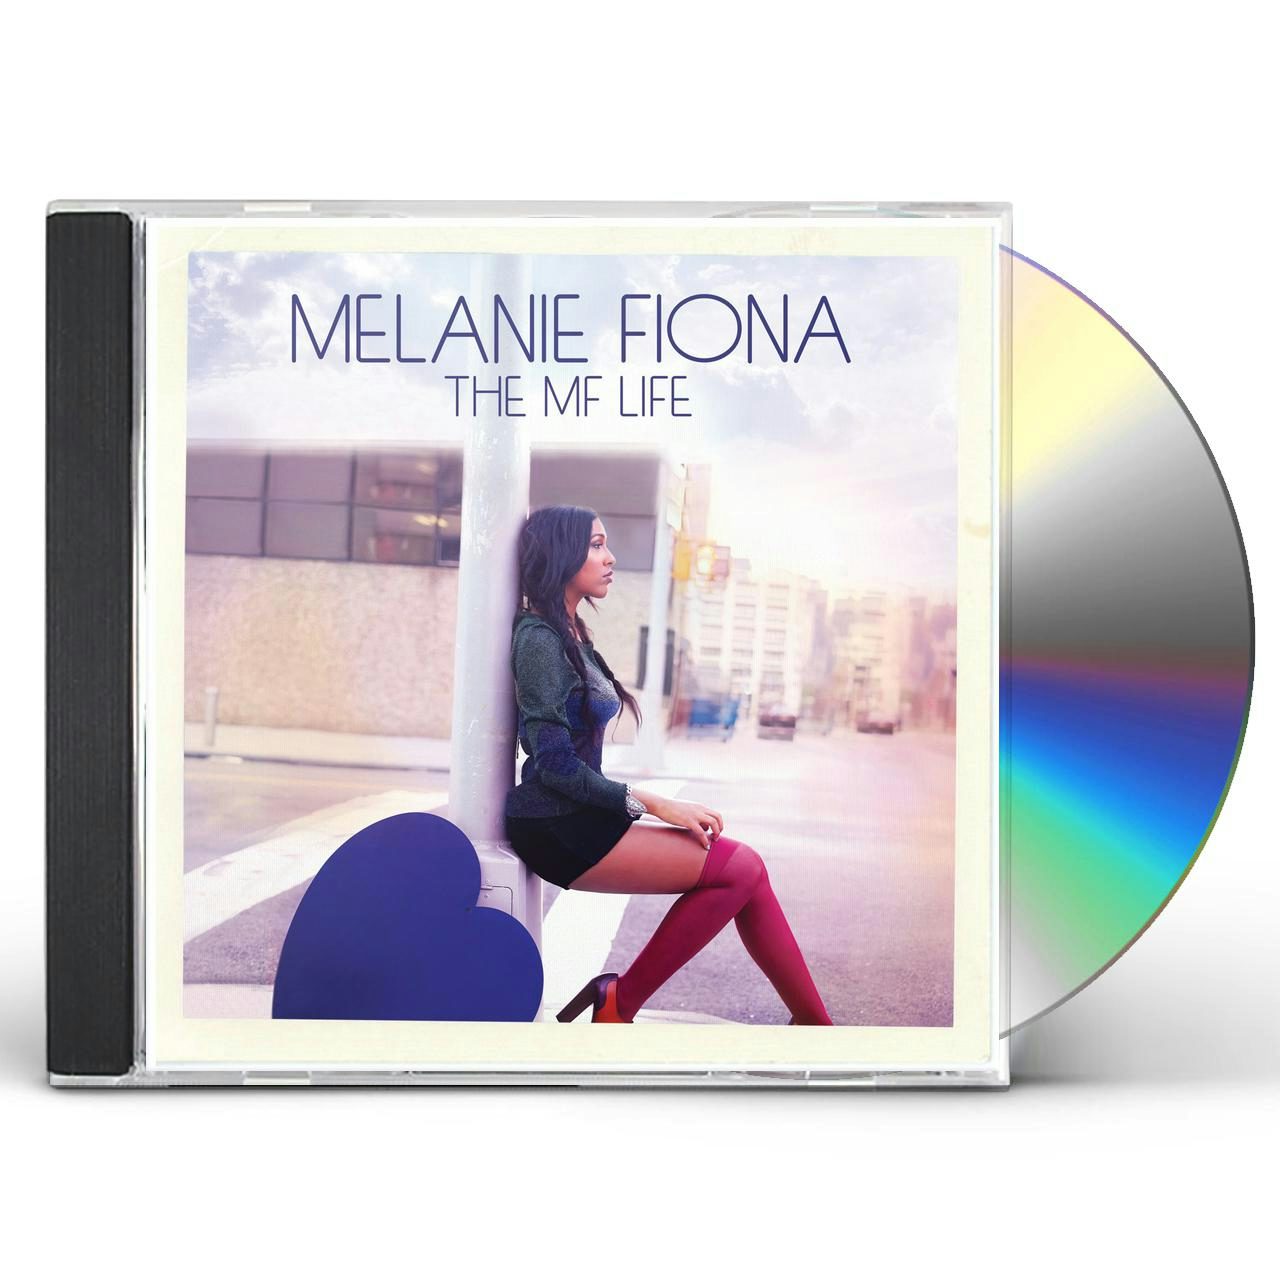 Gone and Never Coming Back-Melanie Fiona Lyrics - YouTube